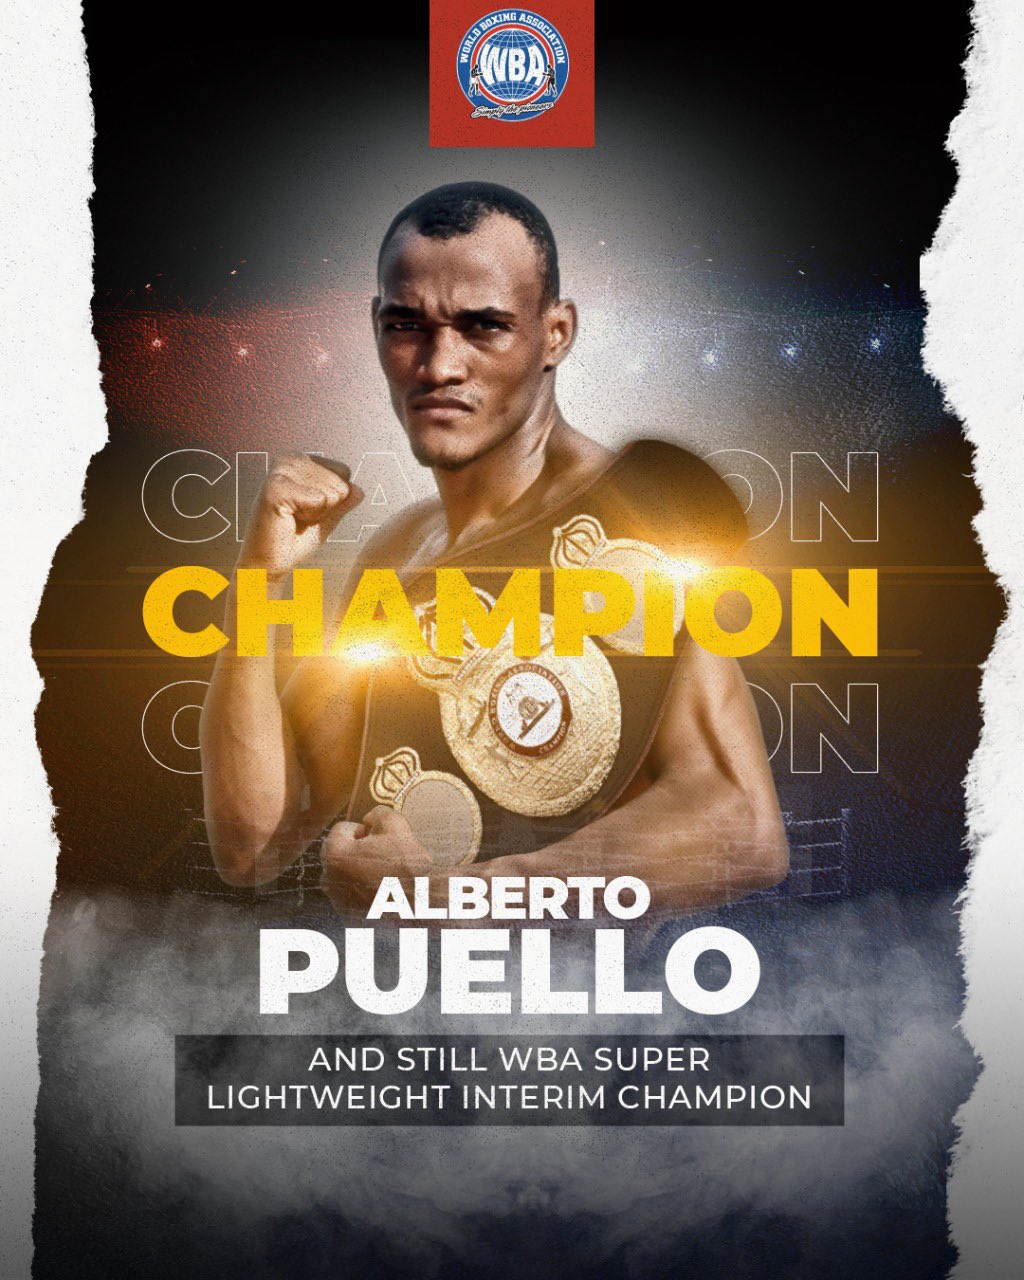 Puello dominated Rubio and retained his WBA interim title in Santo Domingo